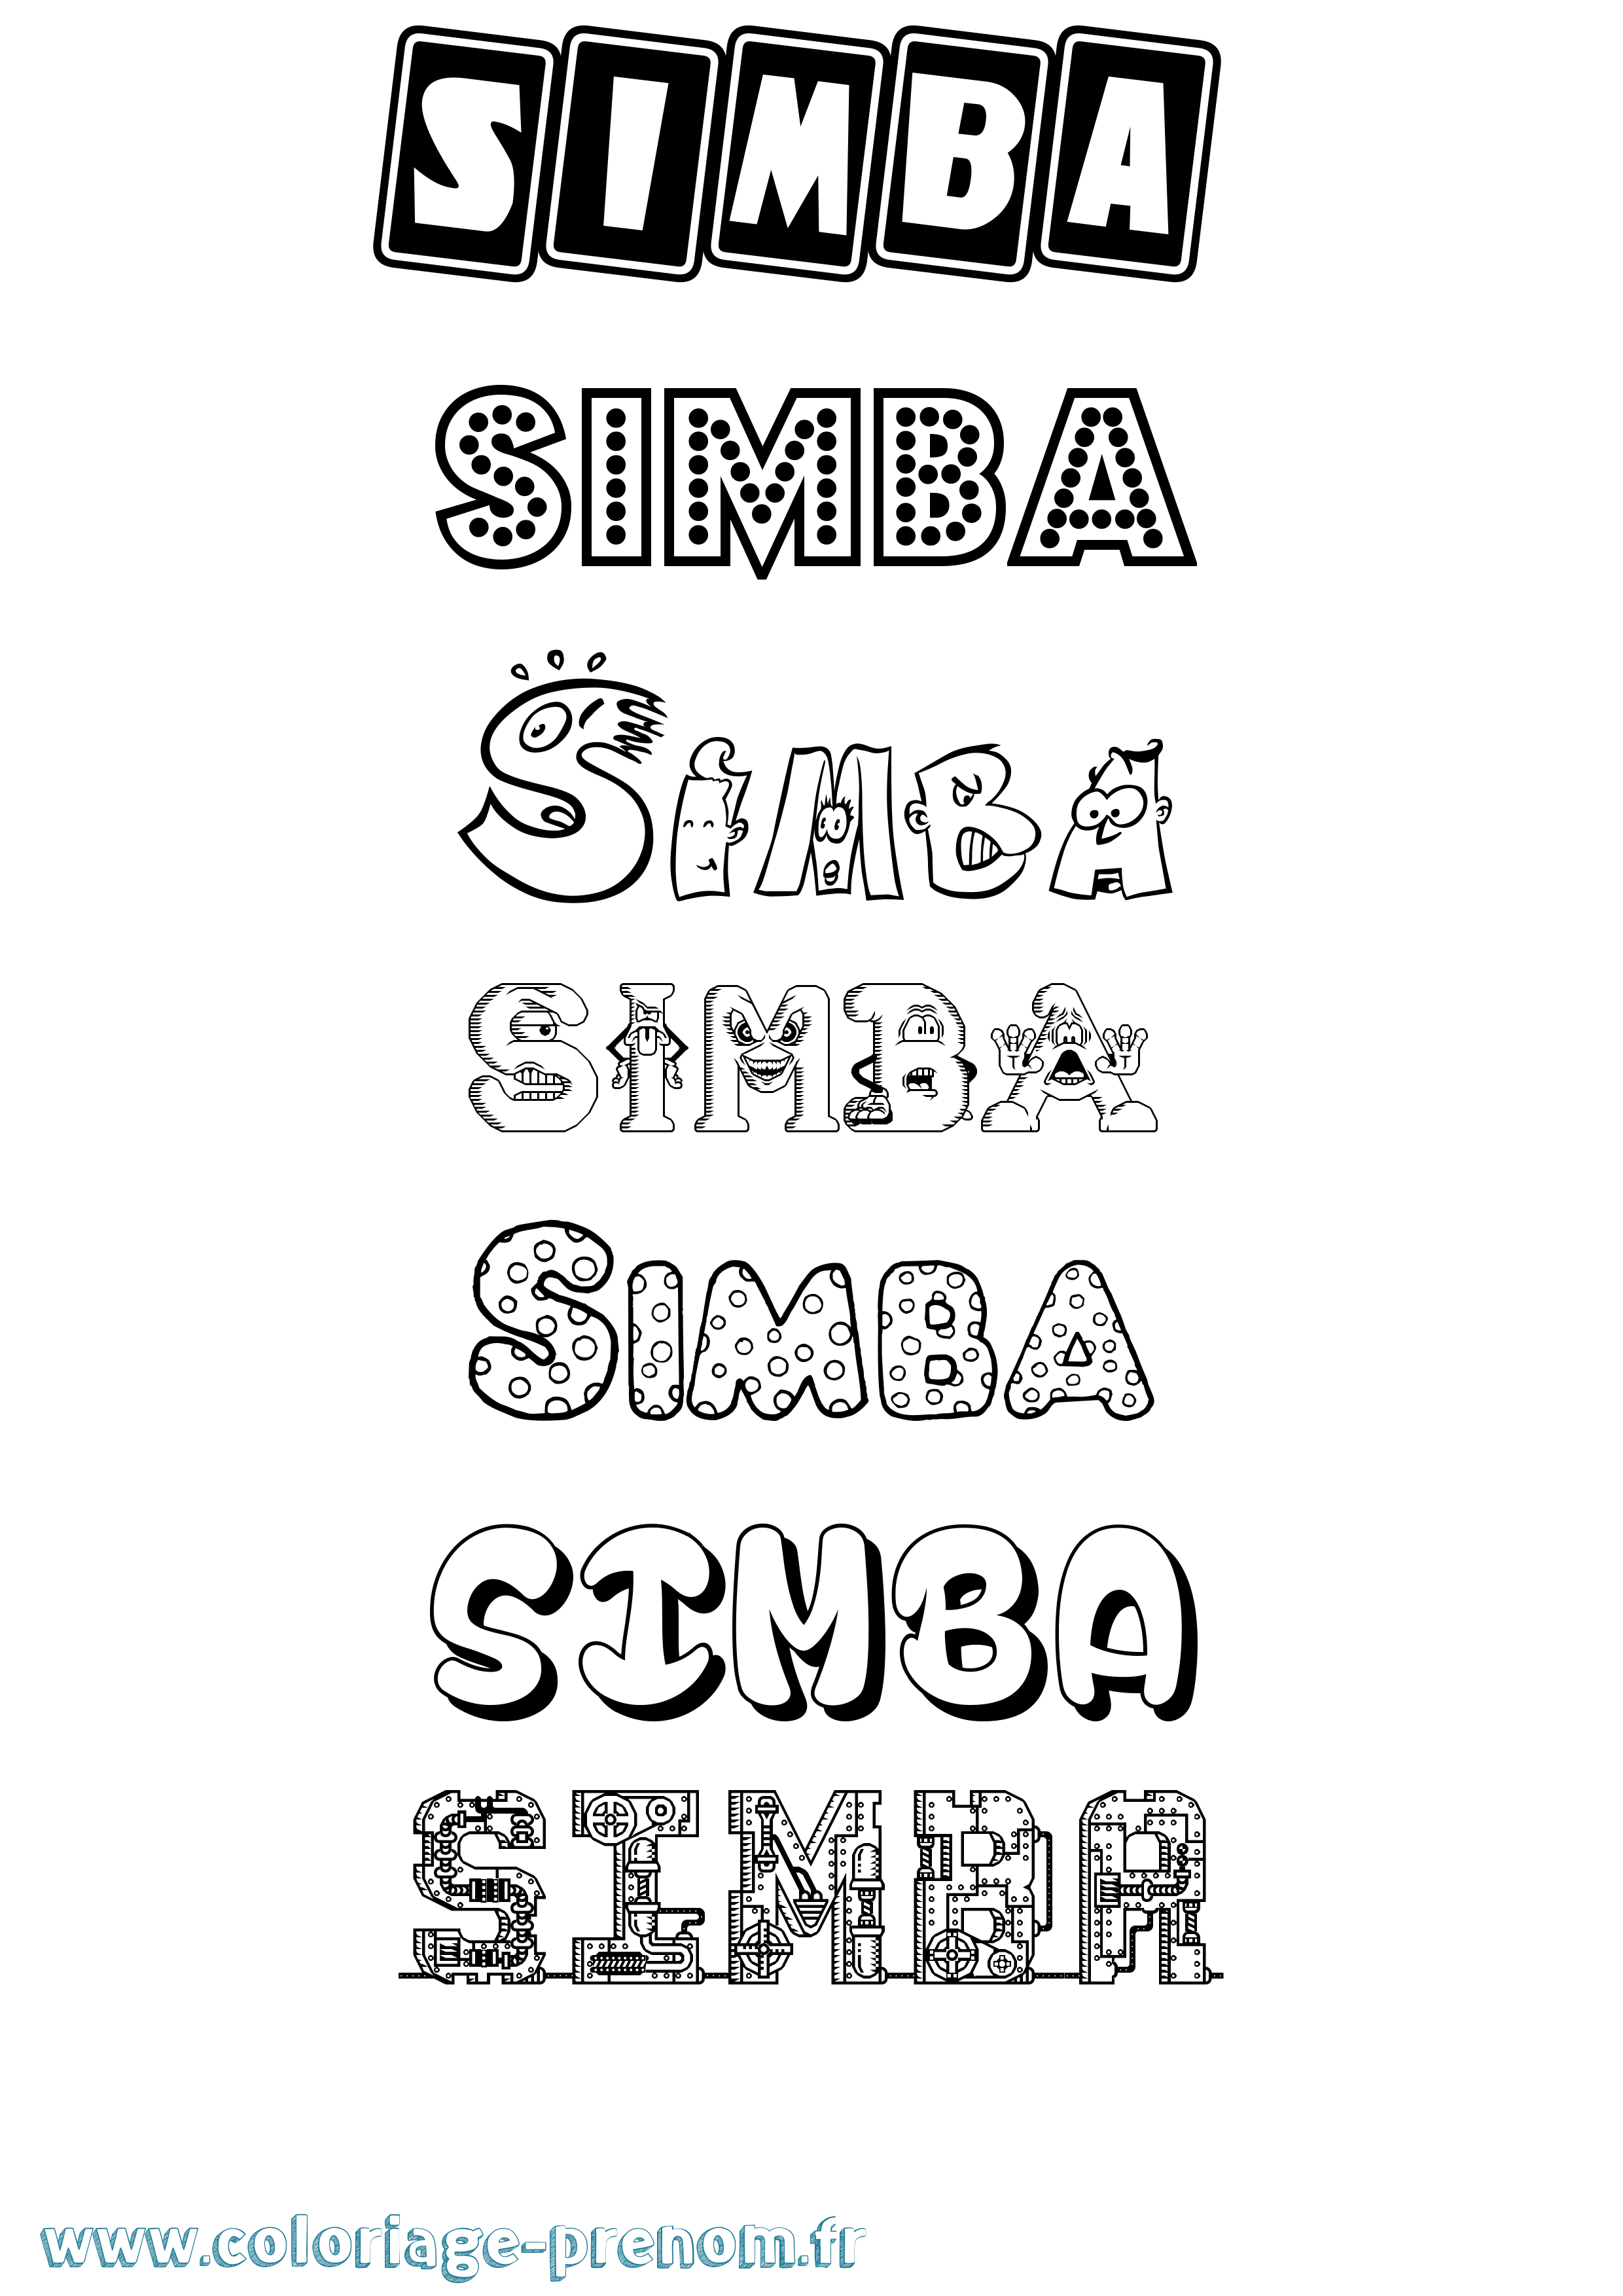 Coloriage prénom Simba Fun